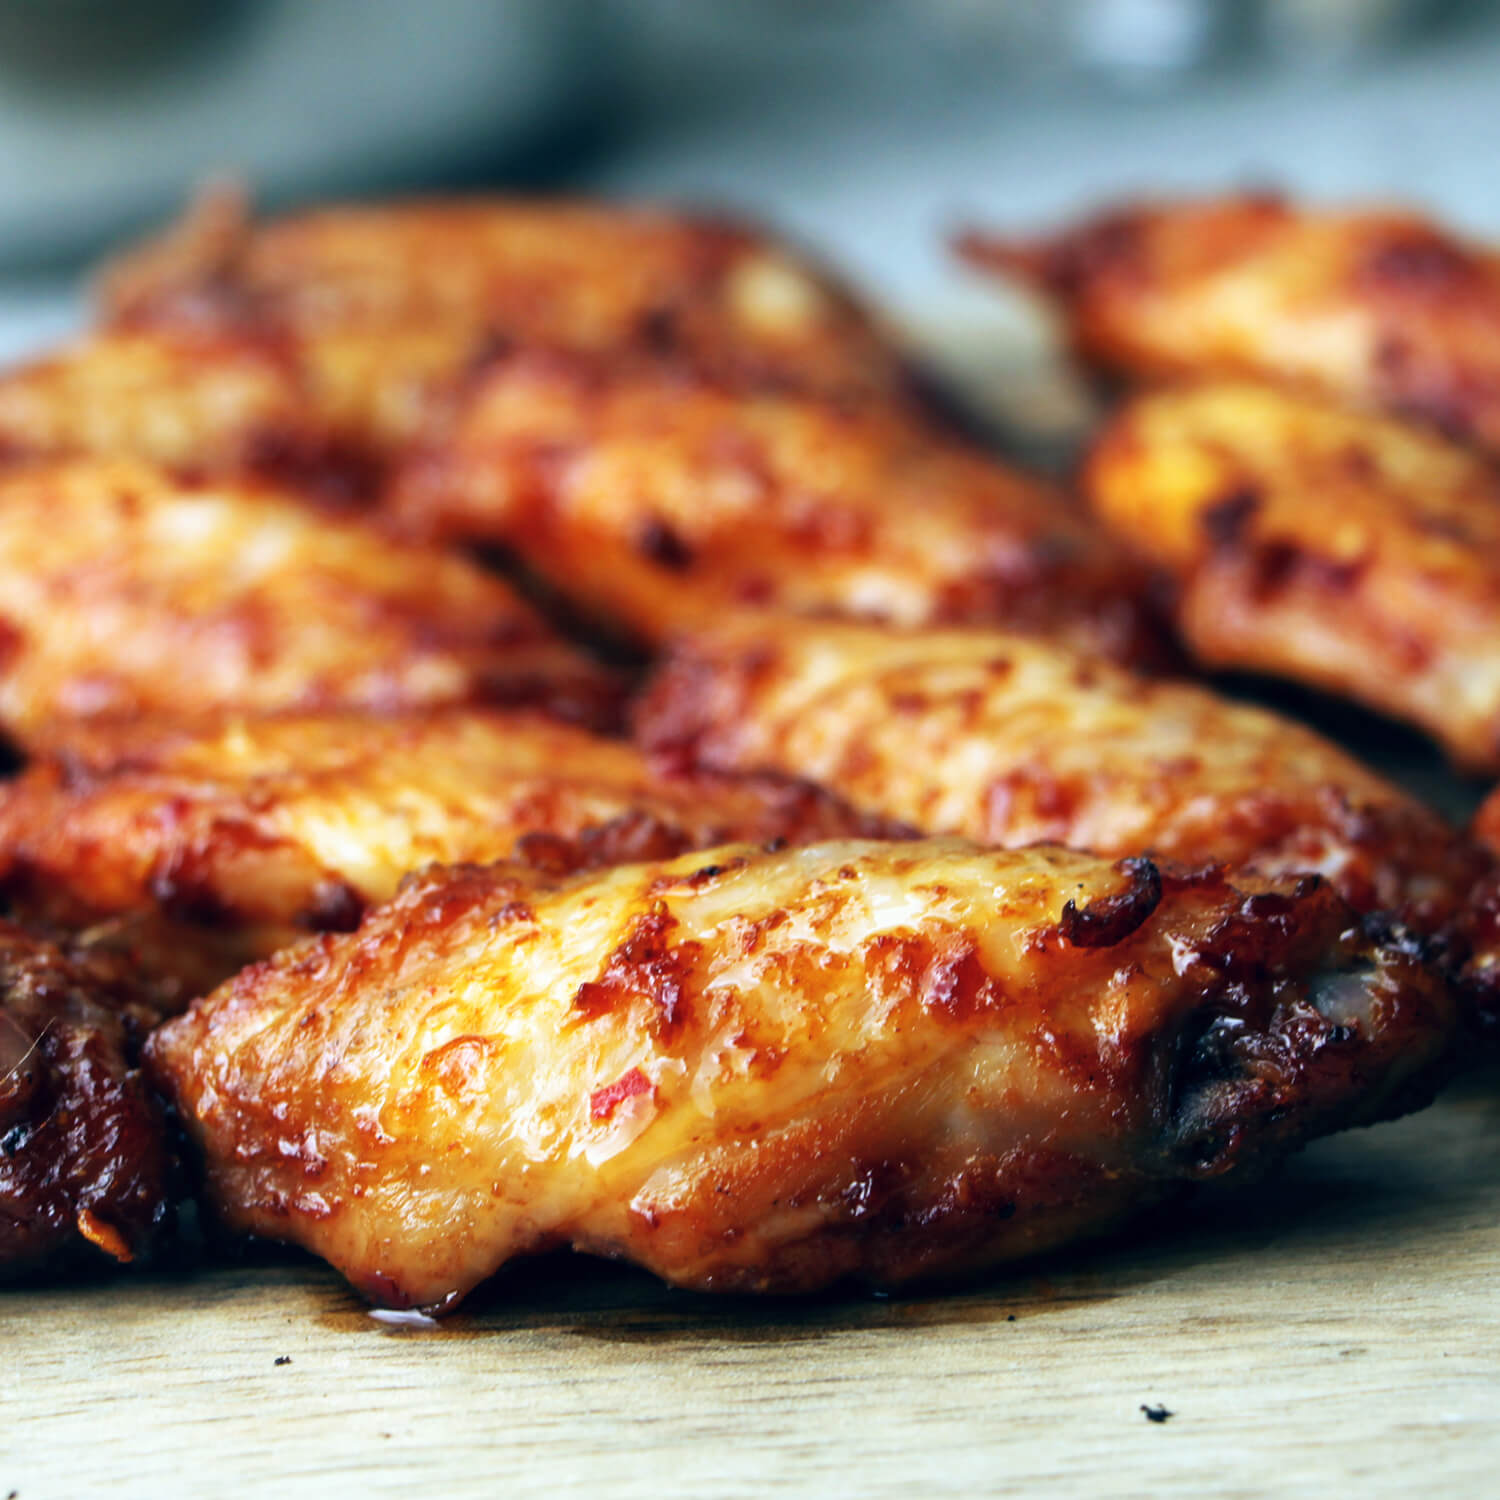 Chicken wings van de BBQ. Kan het nog beter?